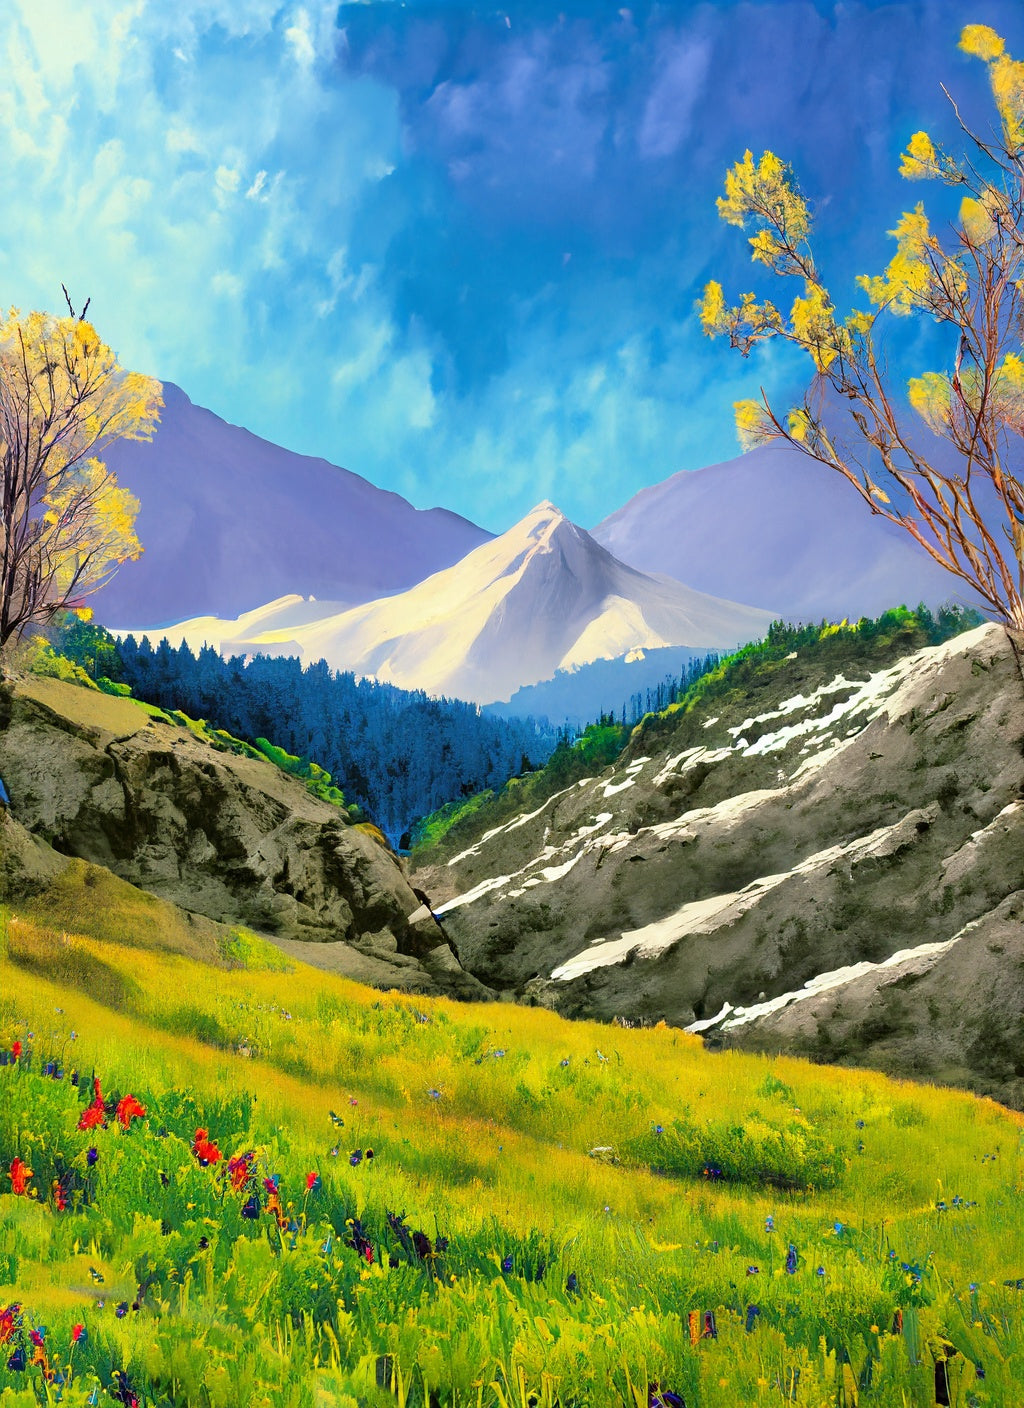 Grassy Glen in The Mountains Digital Illustration Art Print